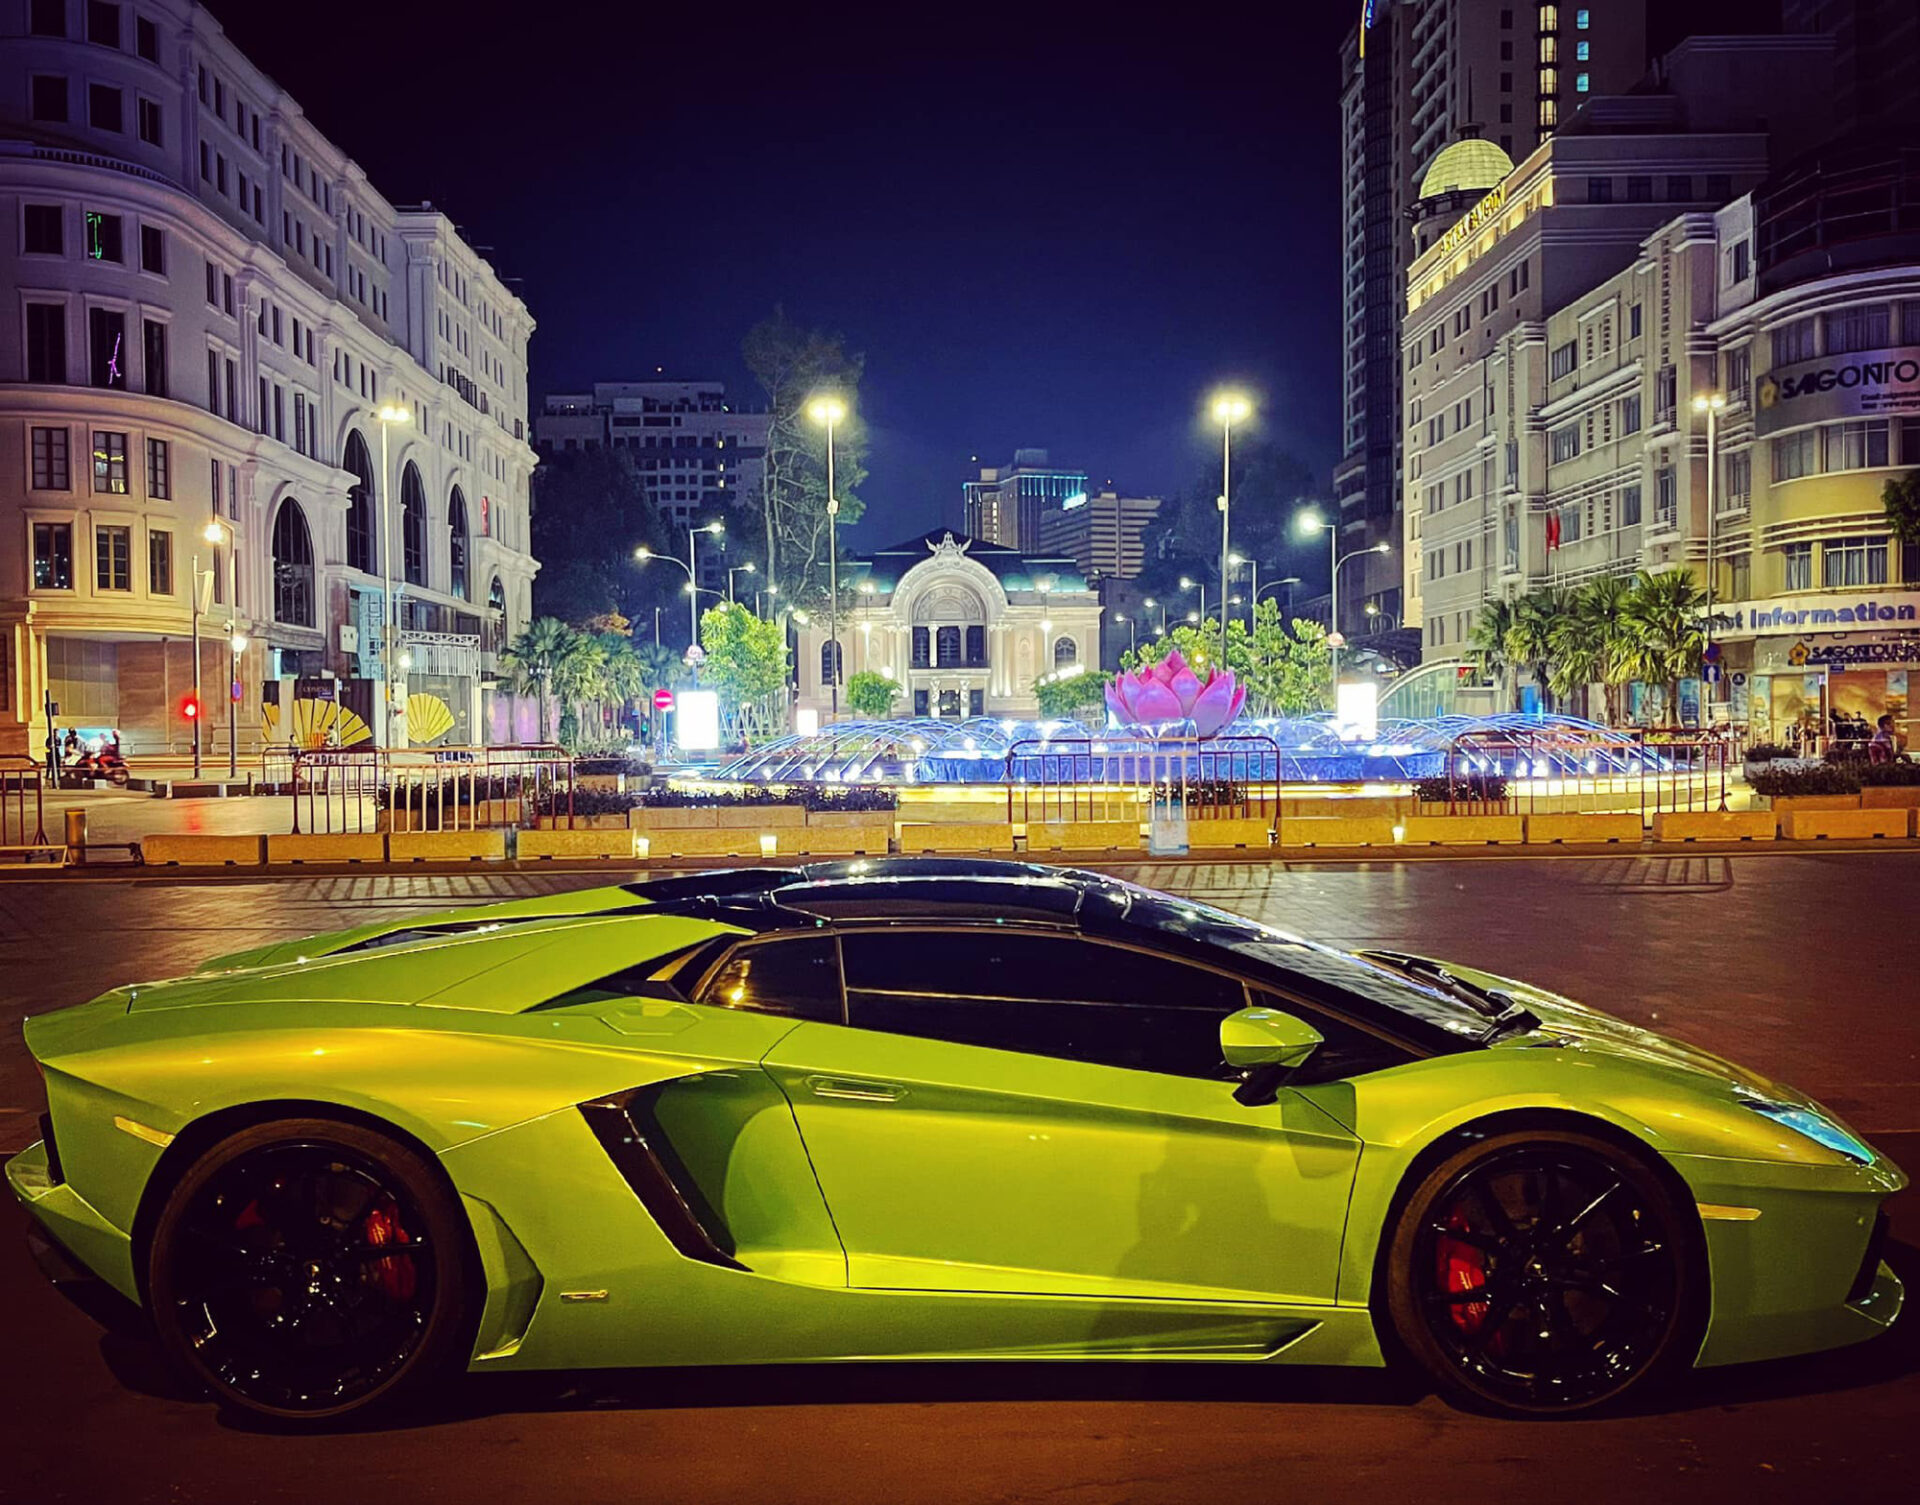 Lamborghini Aventador Roadster nổi tiếng Sài Gòn bị "vặt" gương chiếu hậu